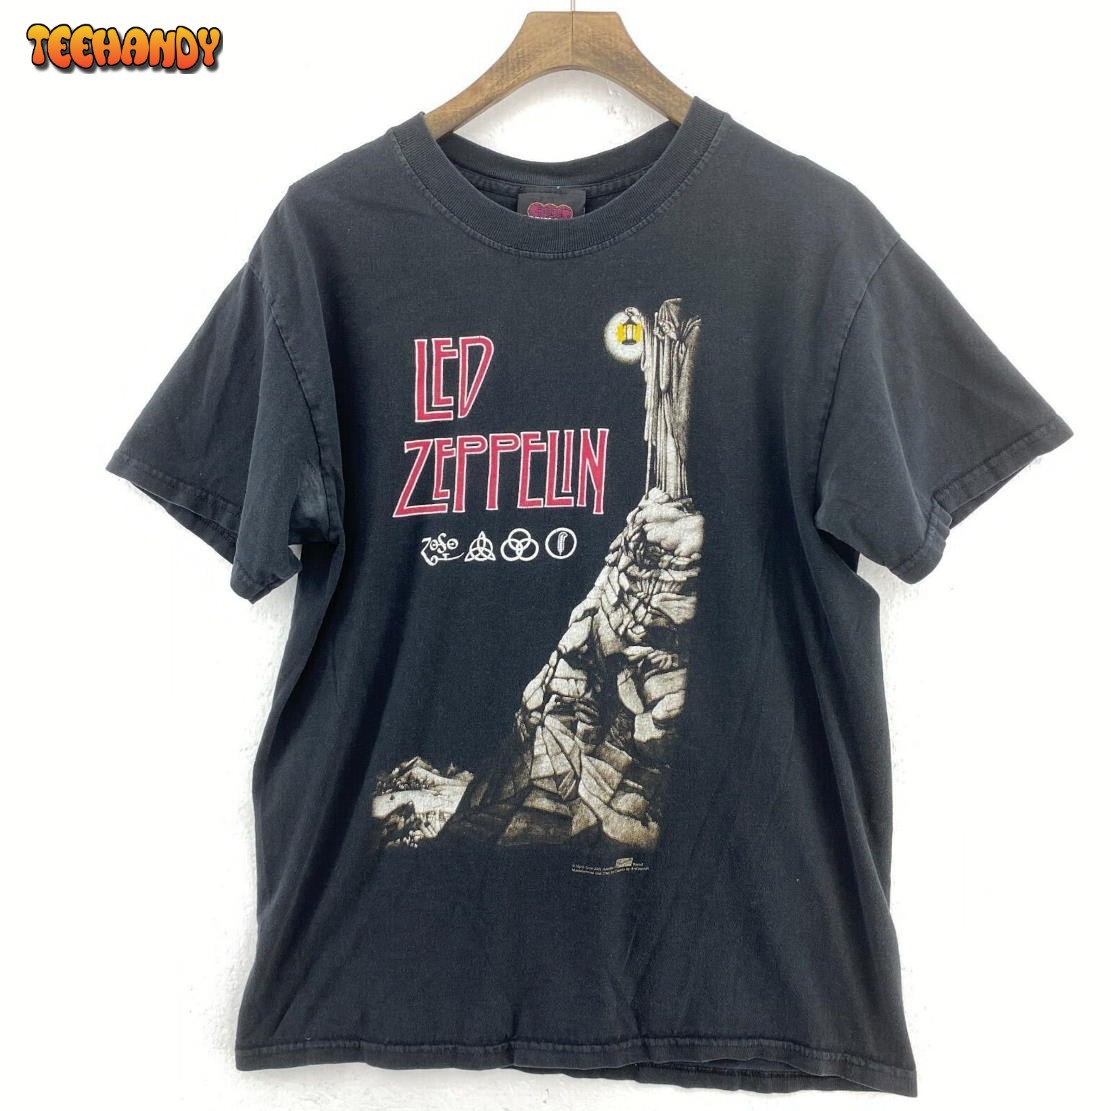 Artimonde Led Zeppelin 2004 Black T-shirt